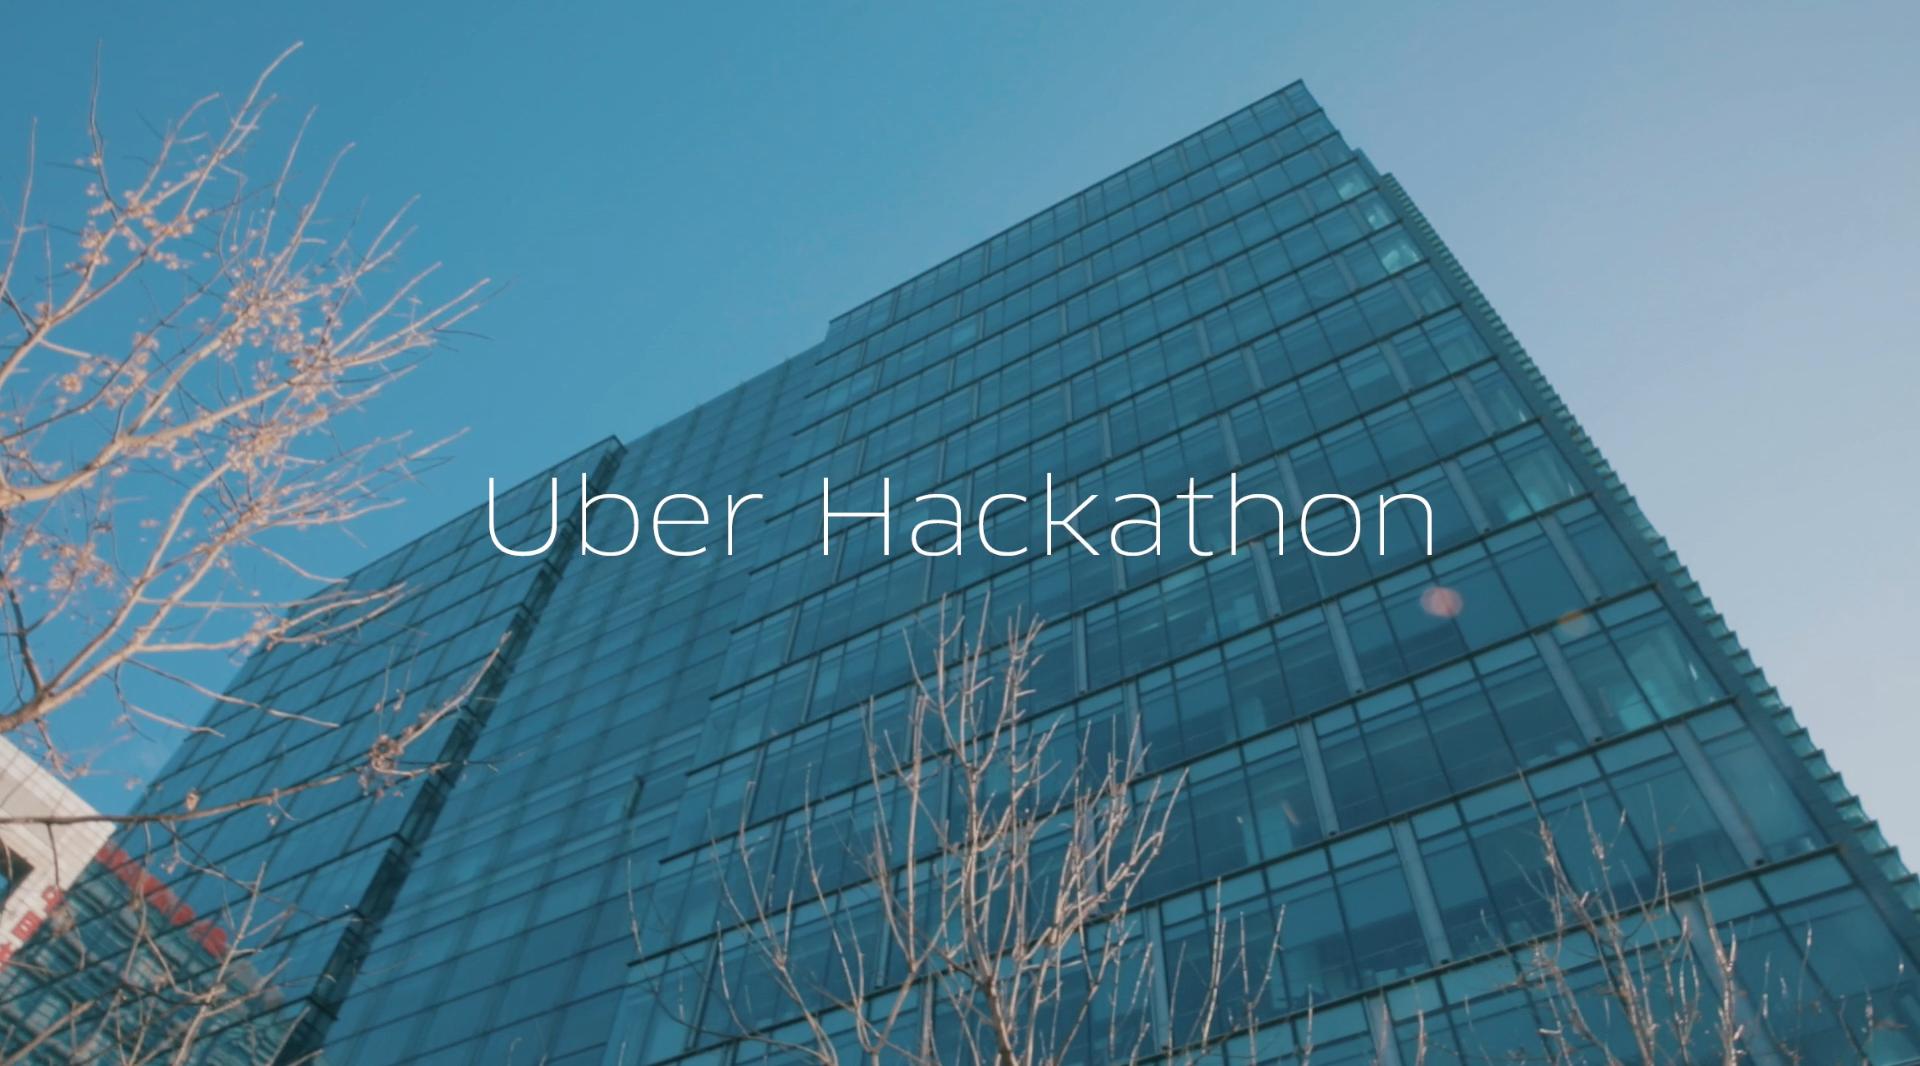 Uber Hackathon